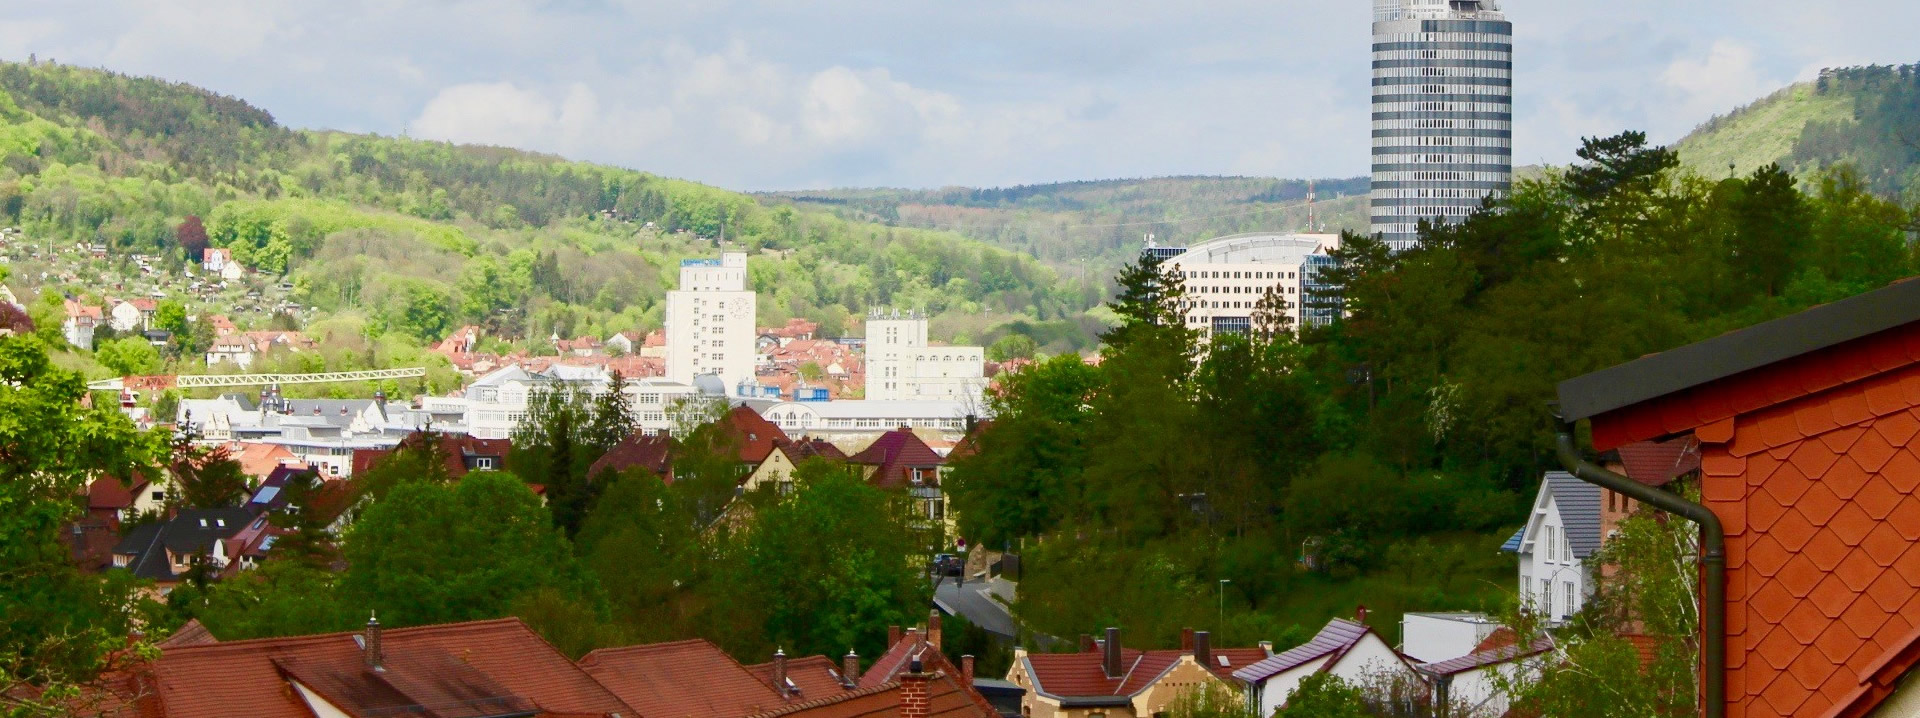 Unser Immobilienbüro ist tätig bei Erfurt, Weimar, Jena & Gera